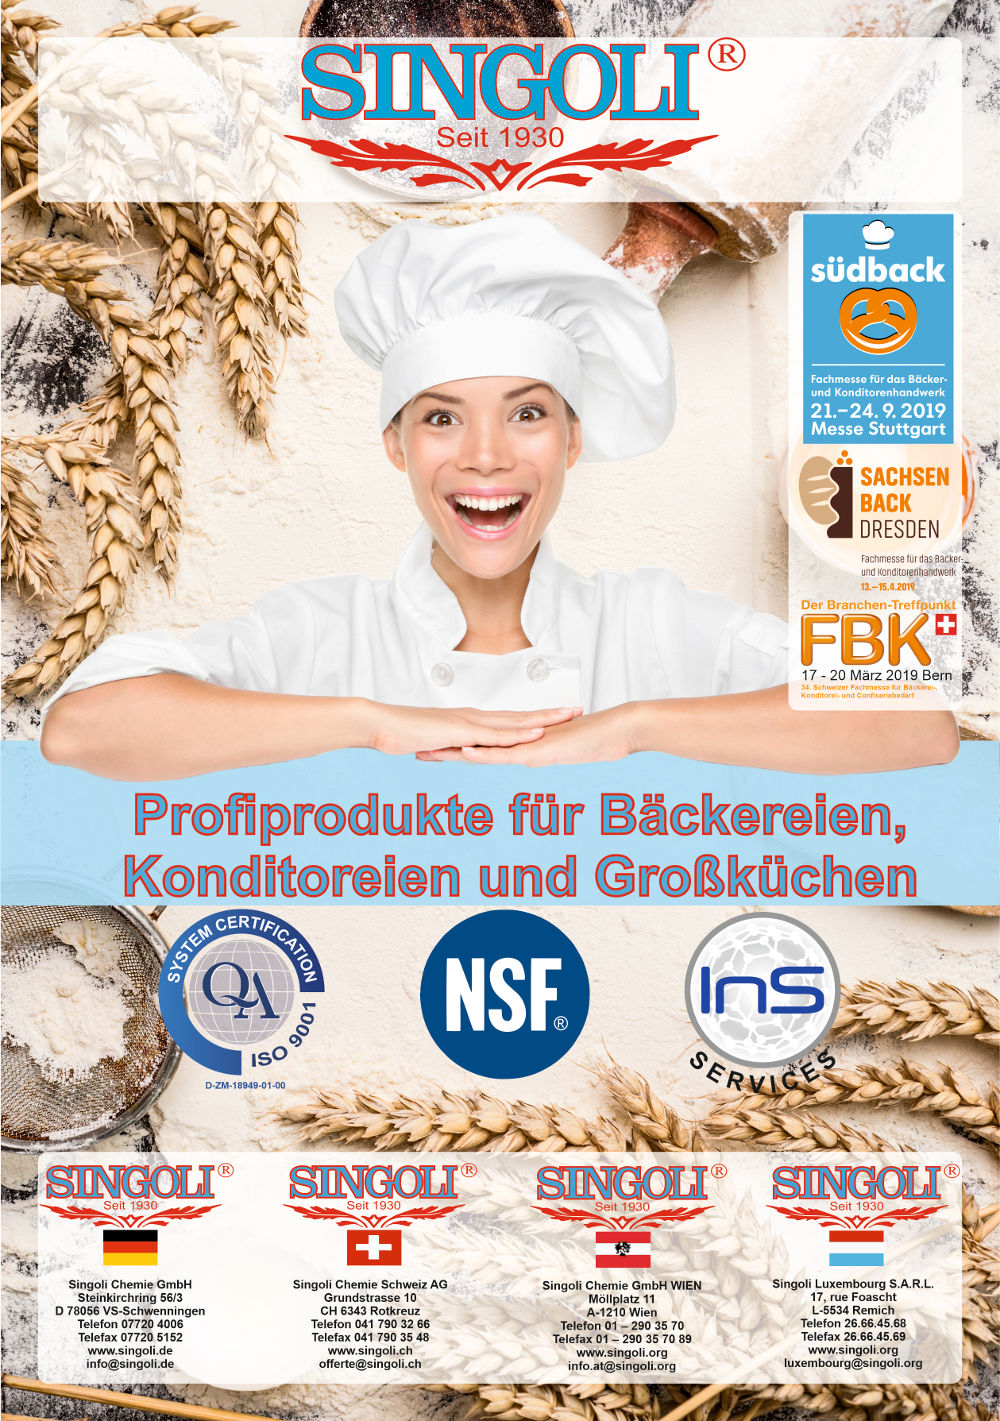 Bäckerei-2019 Signoli – Sauberkeit für Bäckereien, Konditoreien und Großküchen